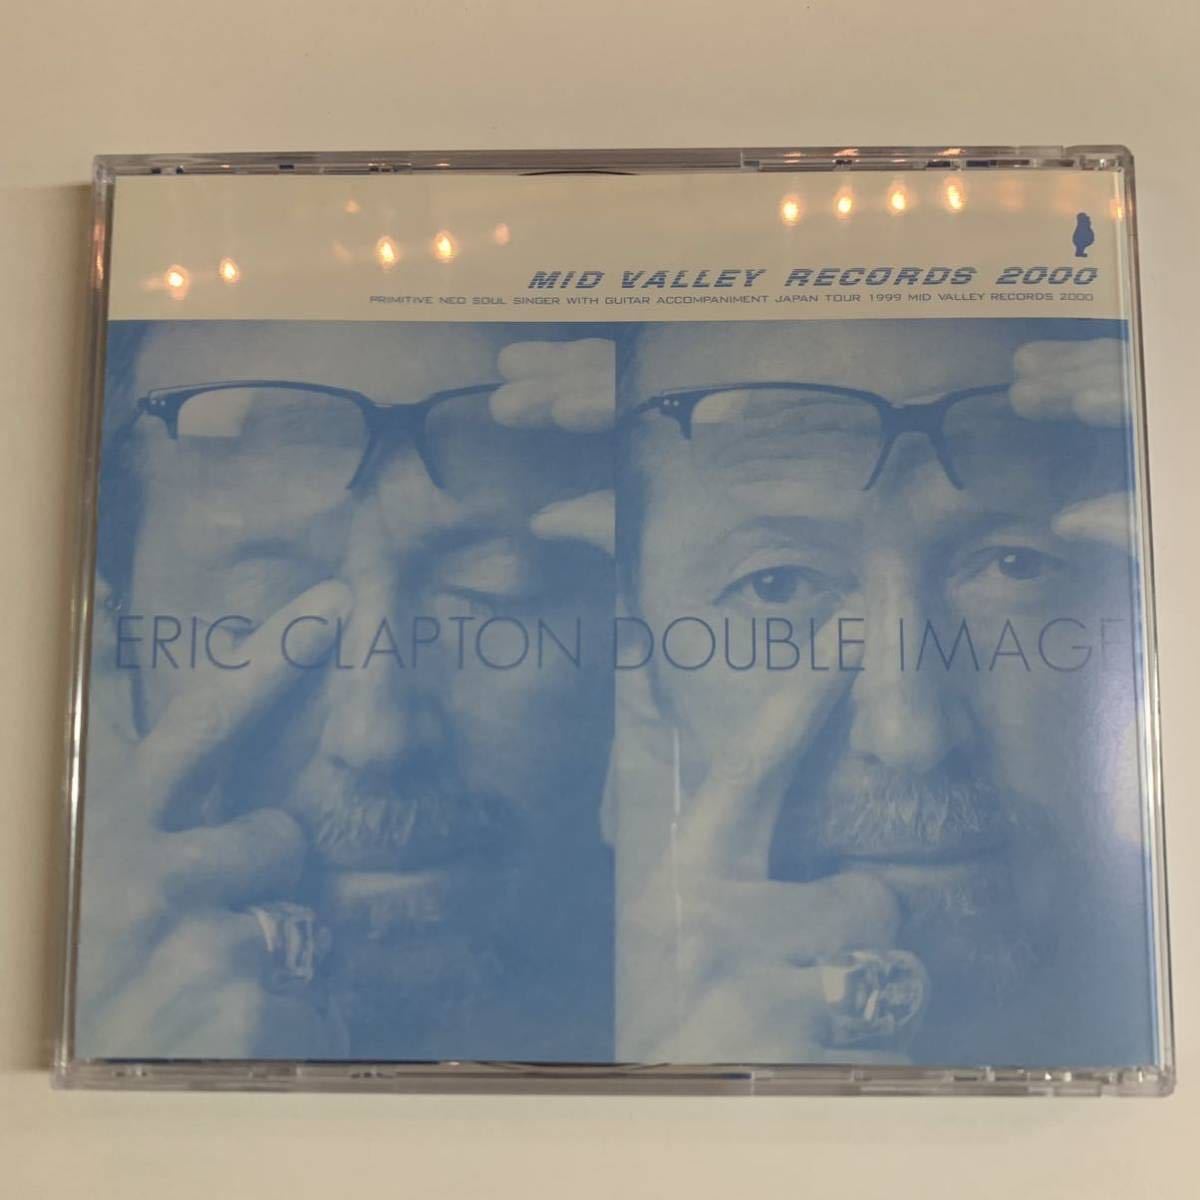 ERIC CLAPTON / DOUBLE IMAGE mastered 4CD Mid Valley Records 名盤！オリジナル・サウンドボード・マスター！ブラックフライデー特価！_画像3